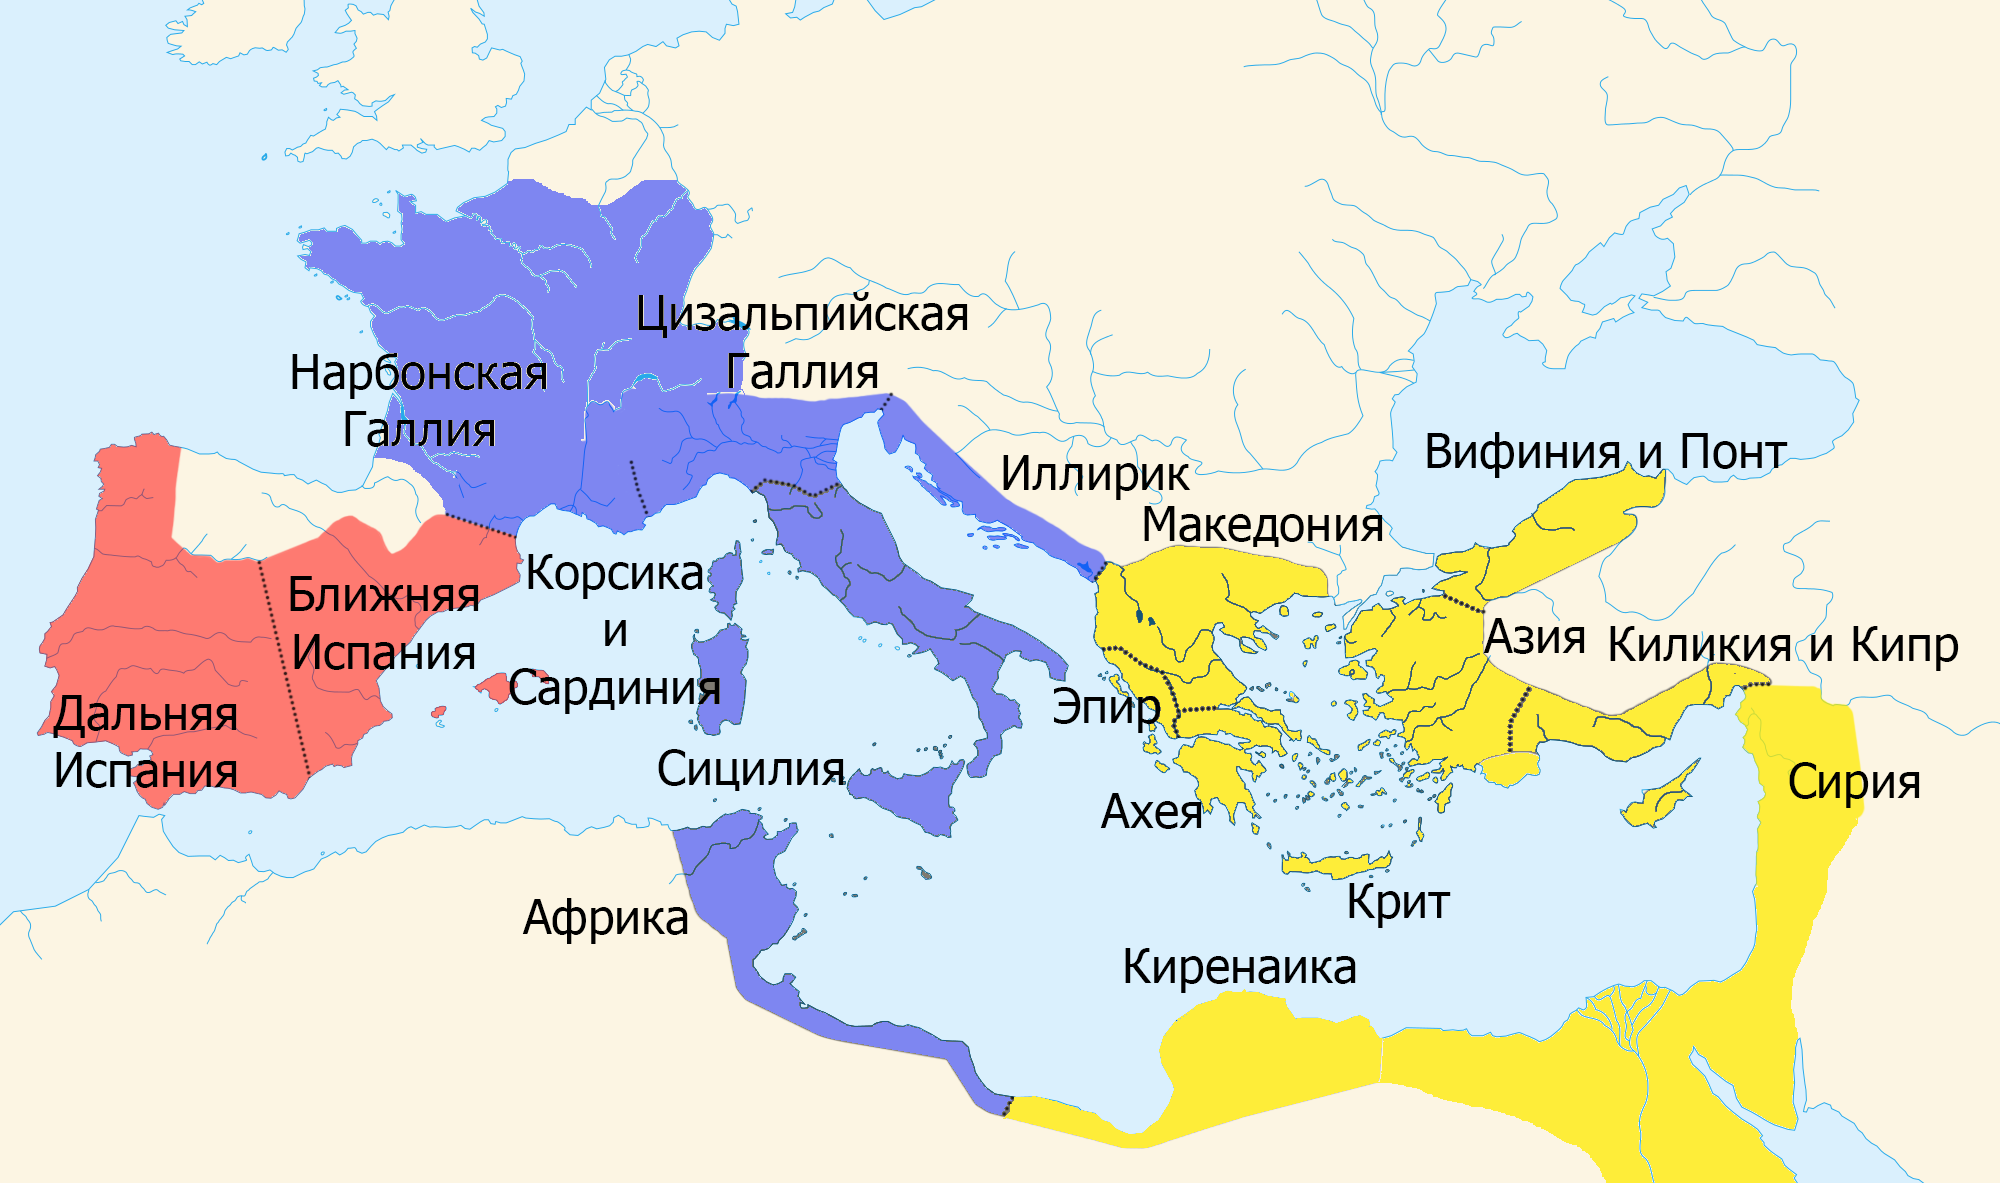 Что такое провинция в древнем риме. Римская Империя при Юлии Цезаре. Римская Империя при Цезаре карта. Римская Империя галлия карта.